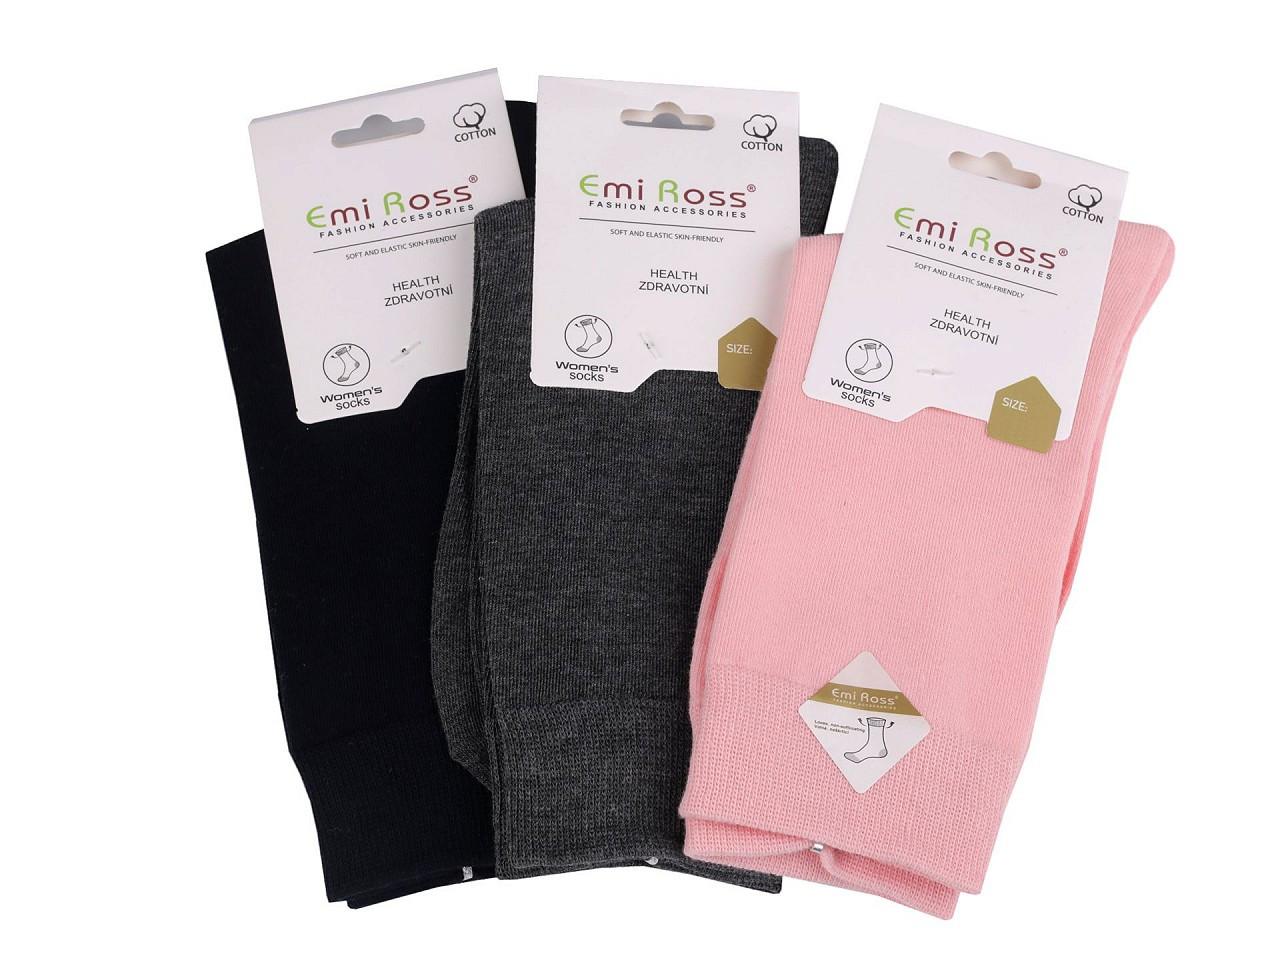 Dámské bavlněné ponožky Emi Ross, barva 14 (vel. 39-42) mix